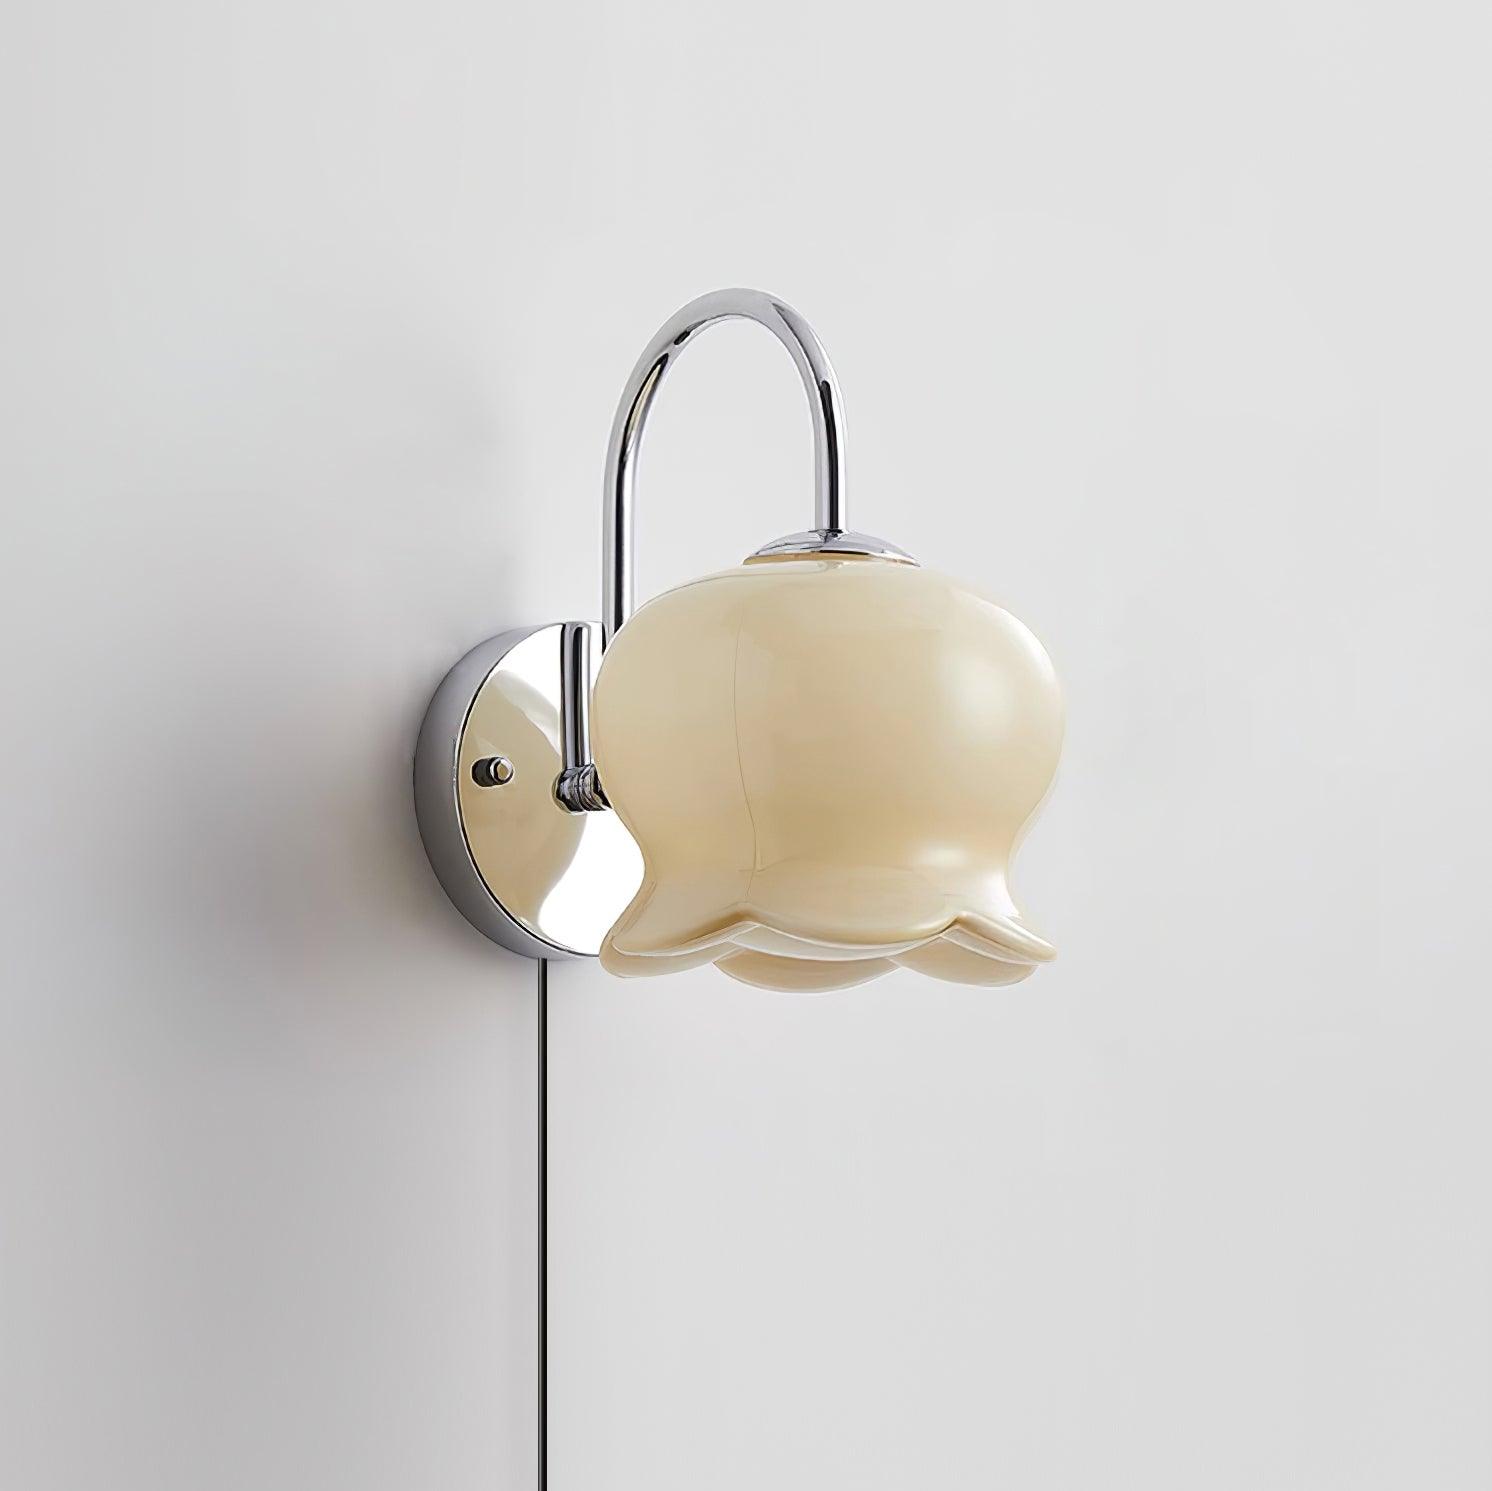 Millie Bells Plug In Wall Lamp - Docos